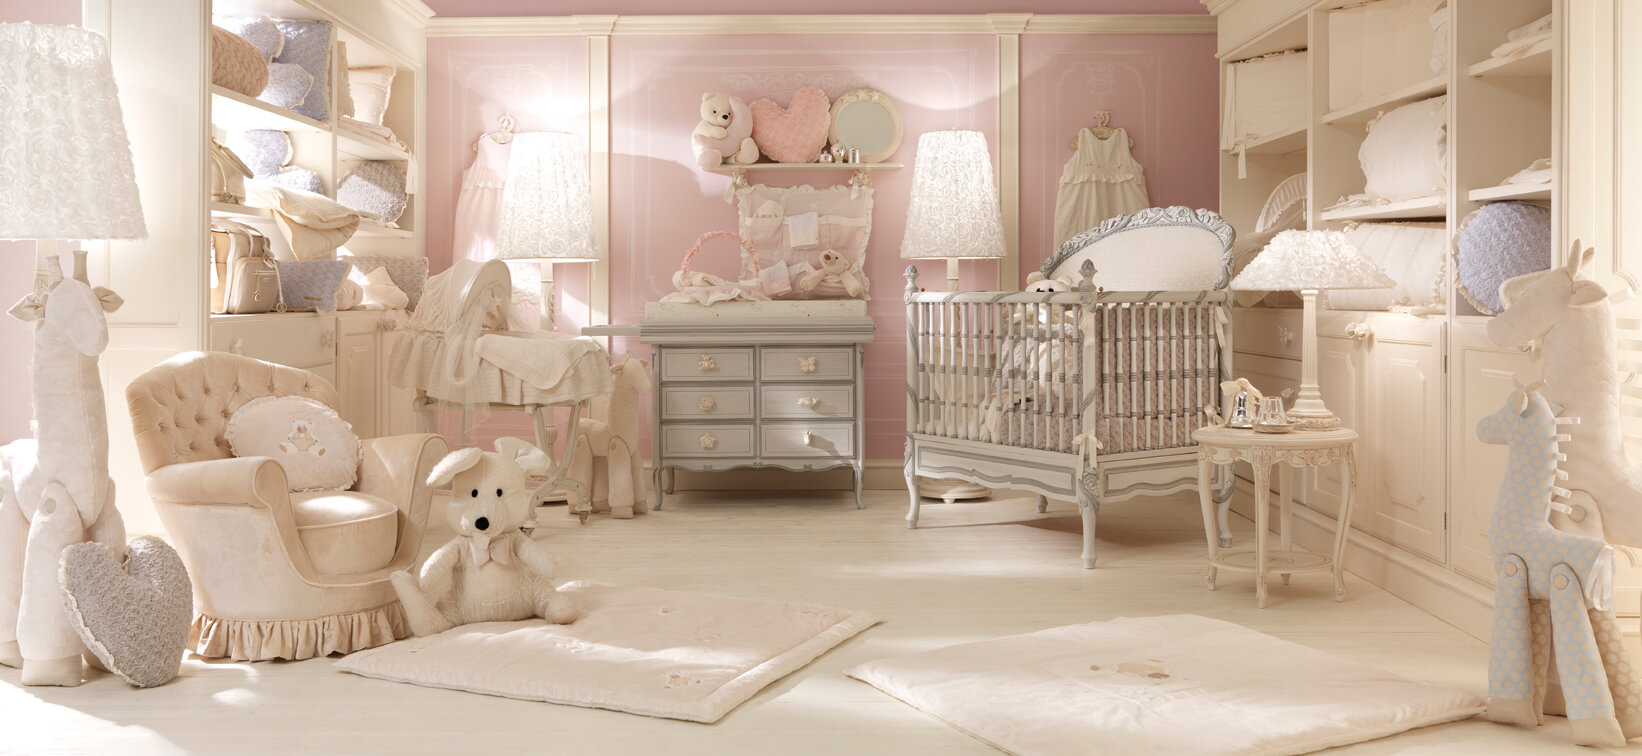 Elegancki, luksusowy pokój dla dziecka 